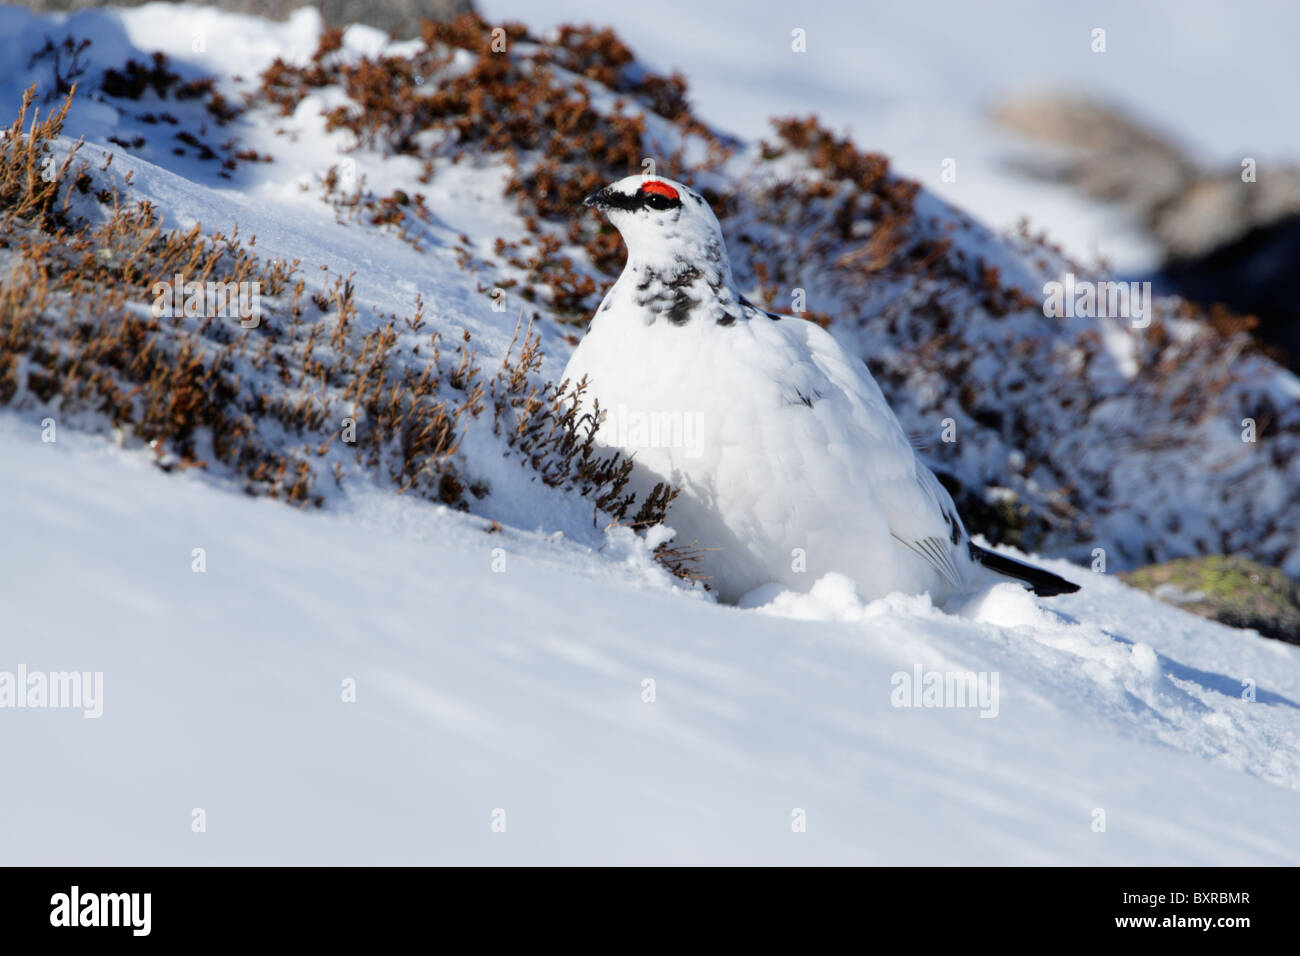 Homme Lapogus rock ptarmigan (muta) montrant plumage d'hiver sur une colline couverte de neige Banque D'Images